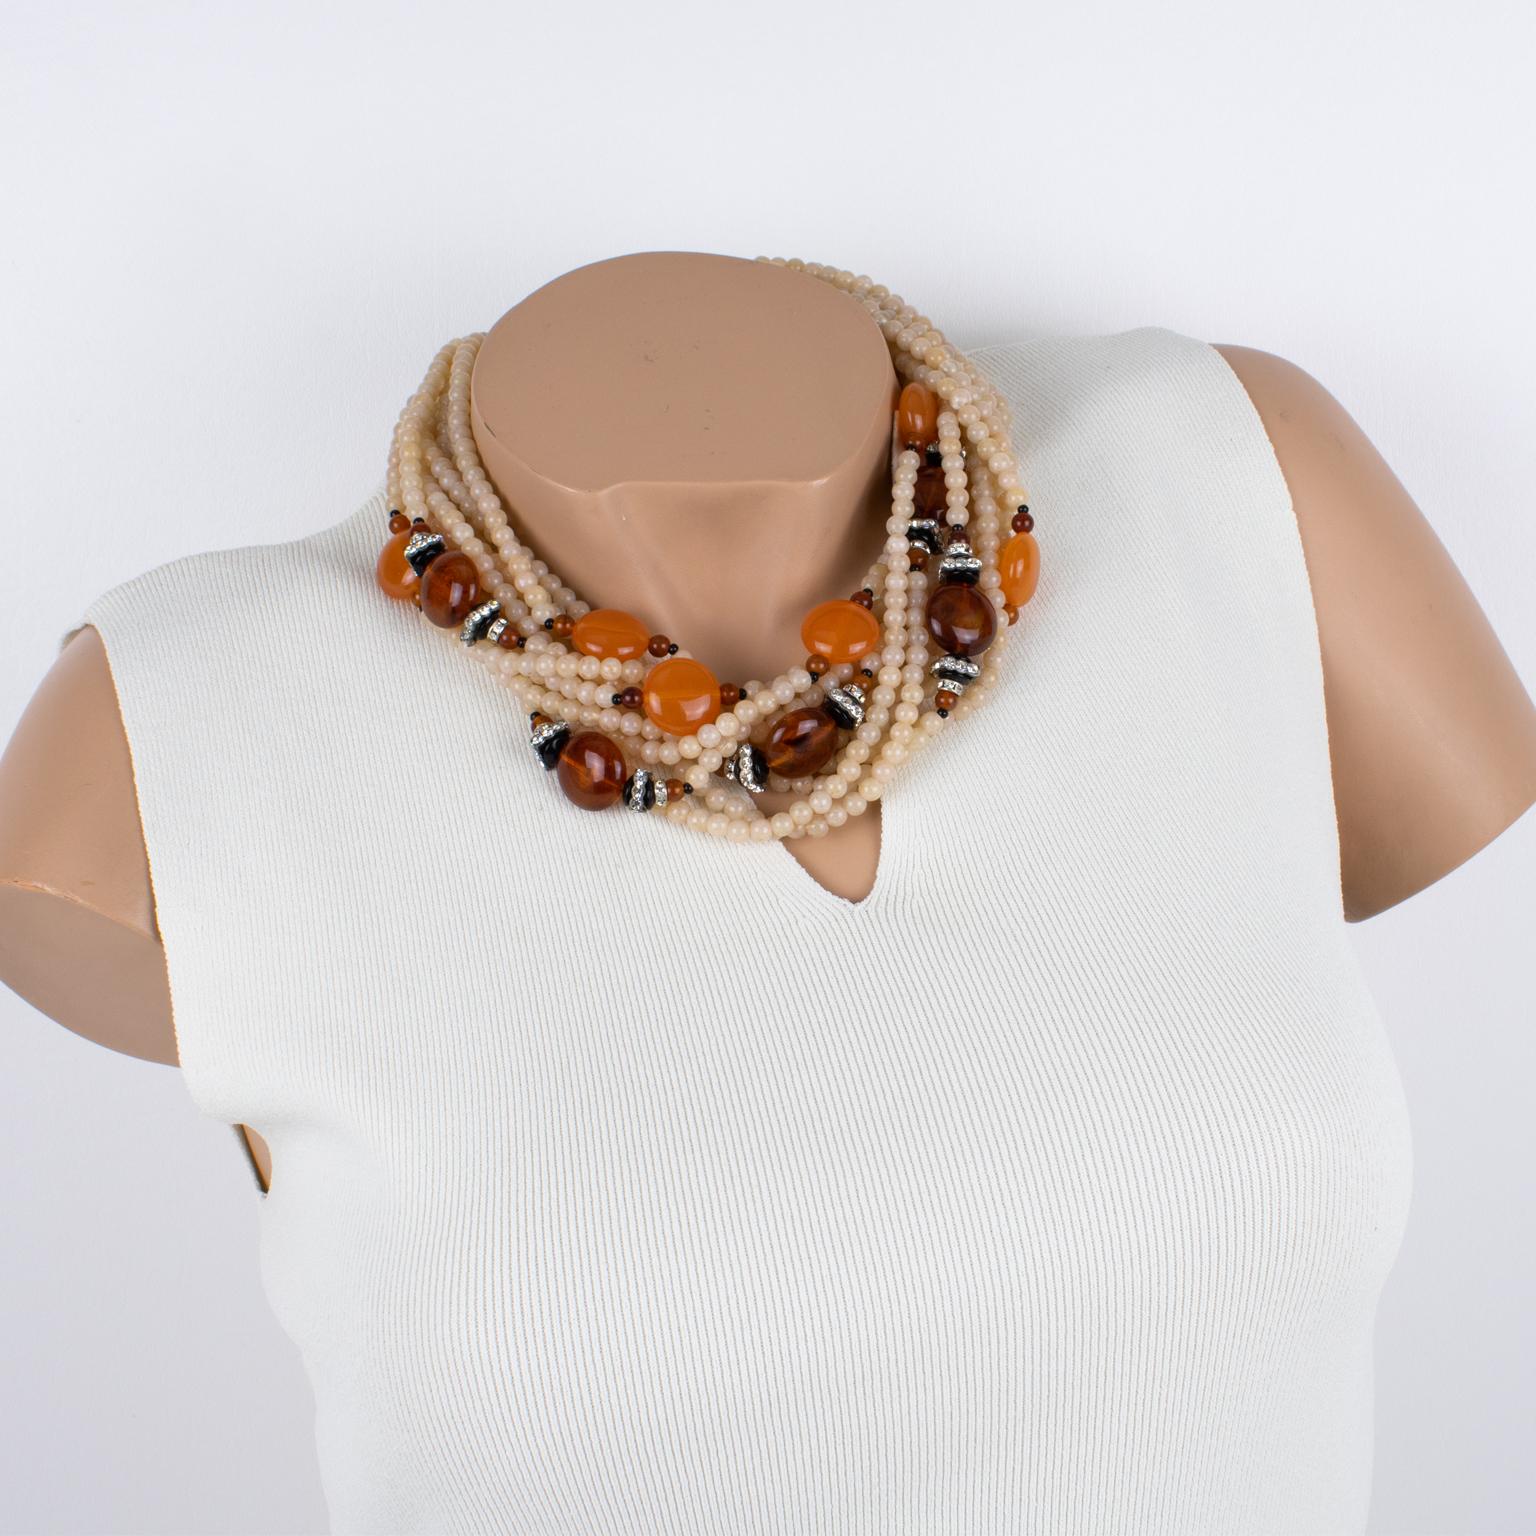 Angela Caputi hat diese elegante Halskette mit Harzperlen in Italien entworfen. Das überdimensionale, mehrsträngige Design mit einer dominanten rosa-weißen Latte kontrastiert mit bernsteinfarbenen und mandarinen-orangenen runden Steinen und winzigen